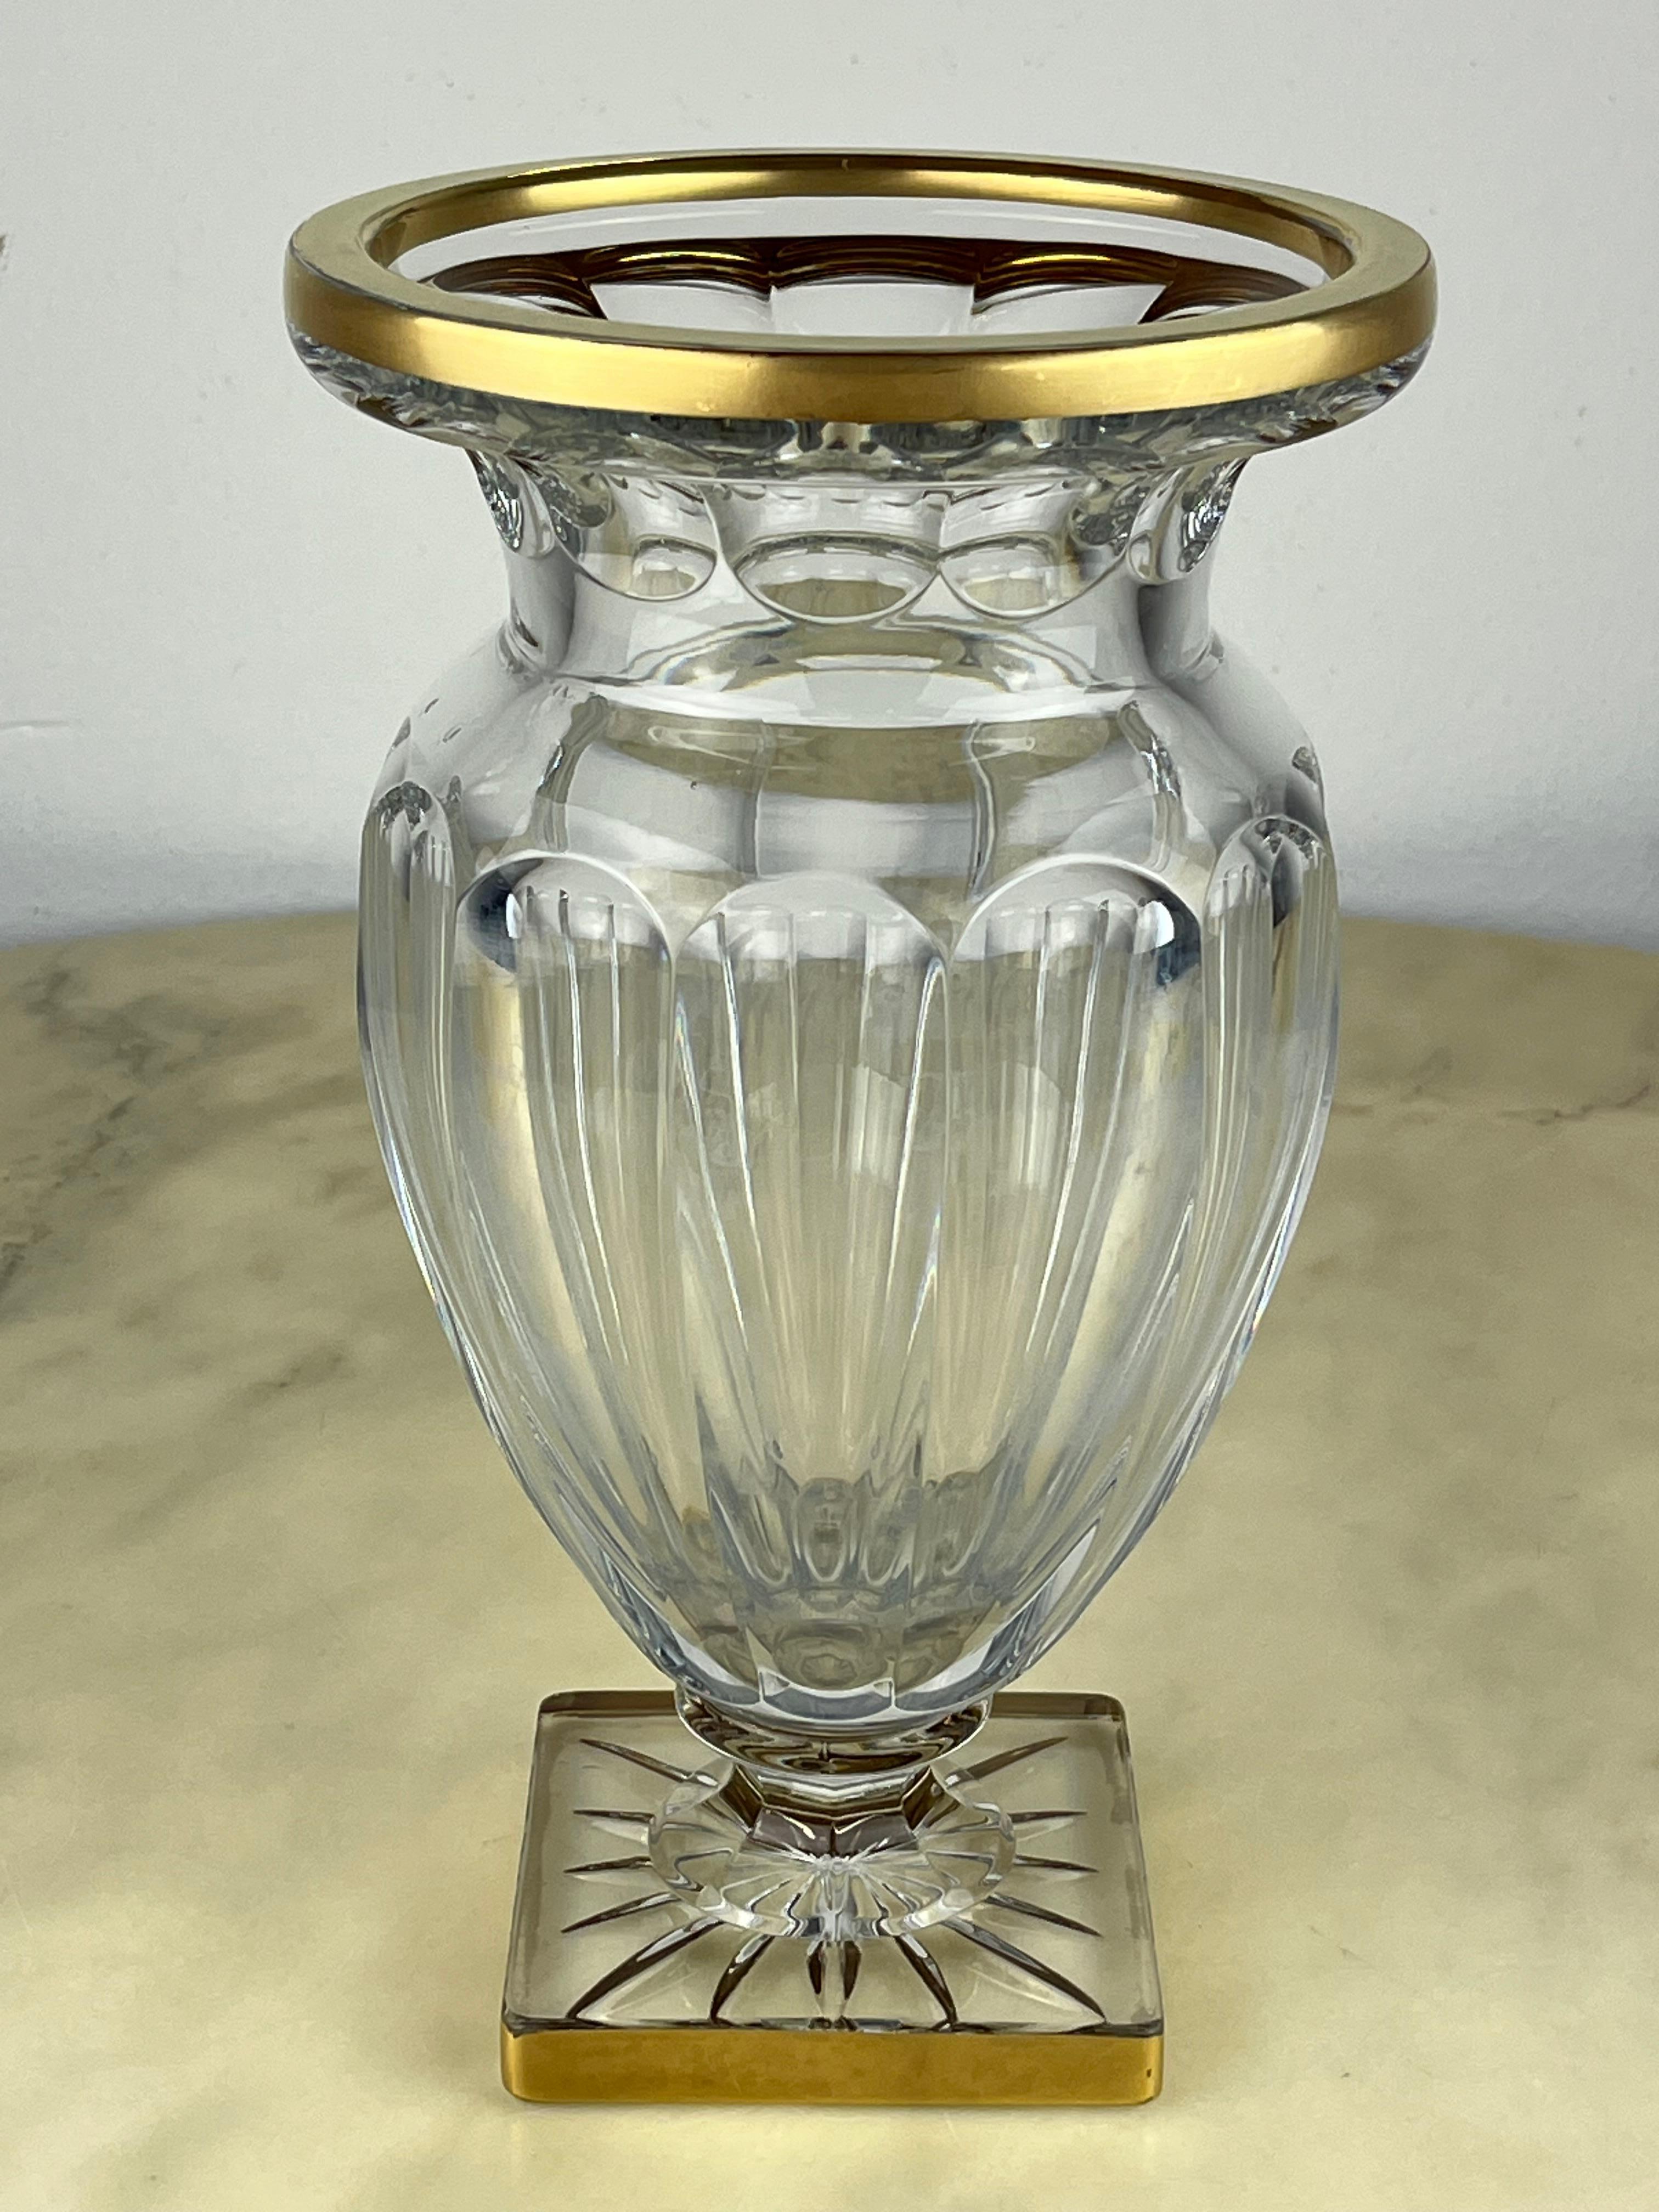 Vase en cristal de plomb, France, années 1980
Intacte, elle présente des décorations en or pur sur les bords qui présentent de petits défauts.
Elle est très belle et élégante.
Si vous regardez les photographies descriptives, vous remarquerez de